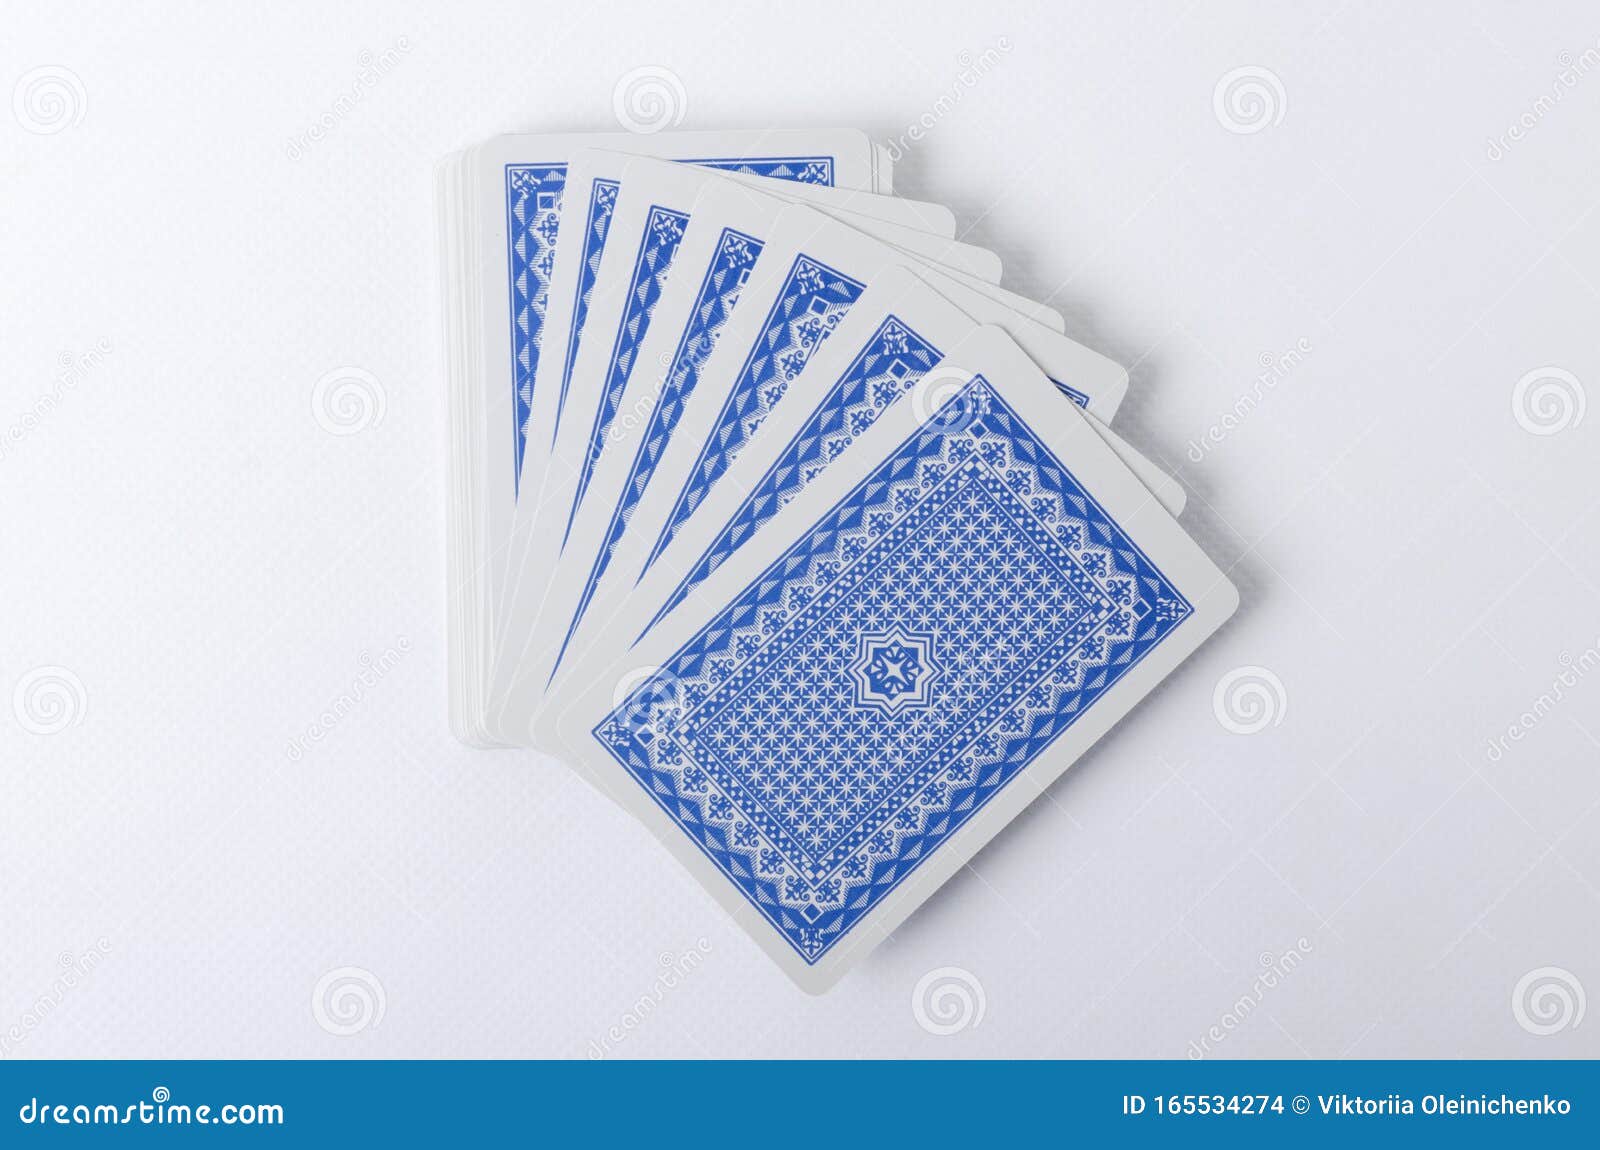 Um Baralho De Cartas De Jogo No Fundo Azul Clássico. Foto Royalty Free,  Gravuras, Imagens e Banco de fotografias. Image 182717157